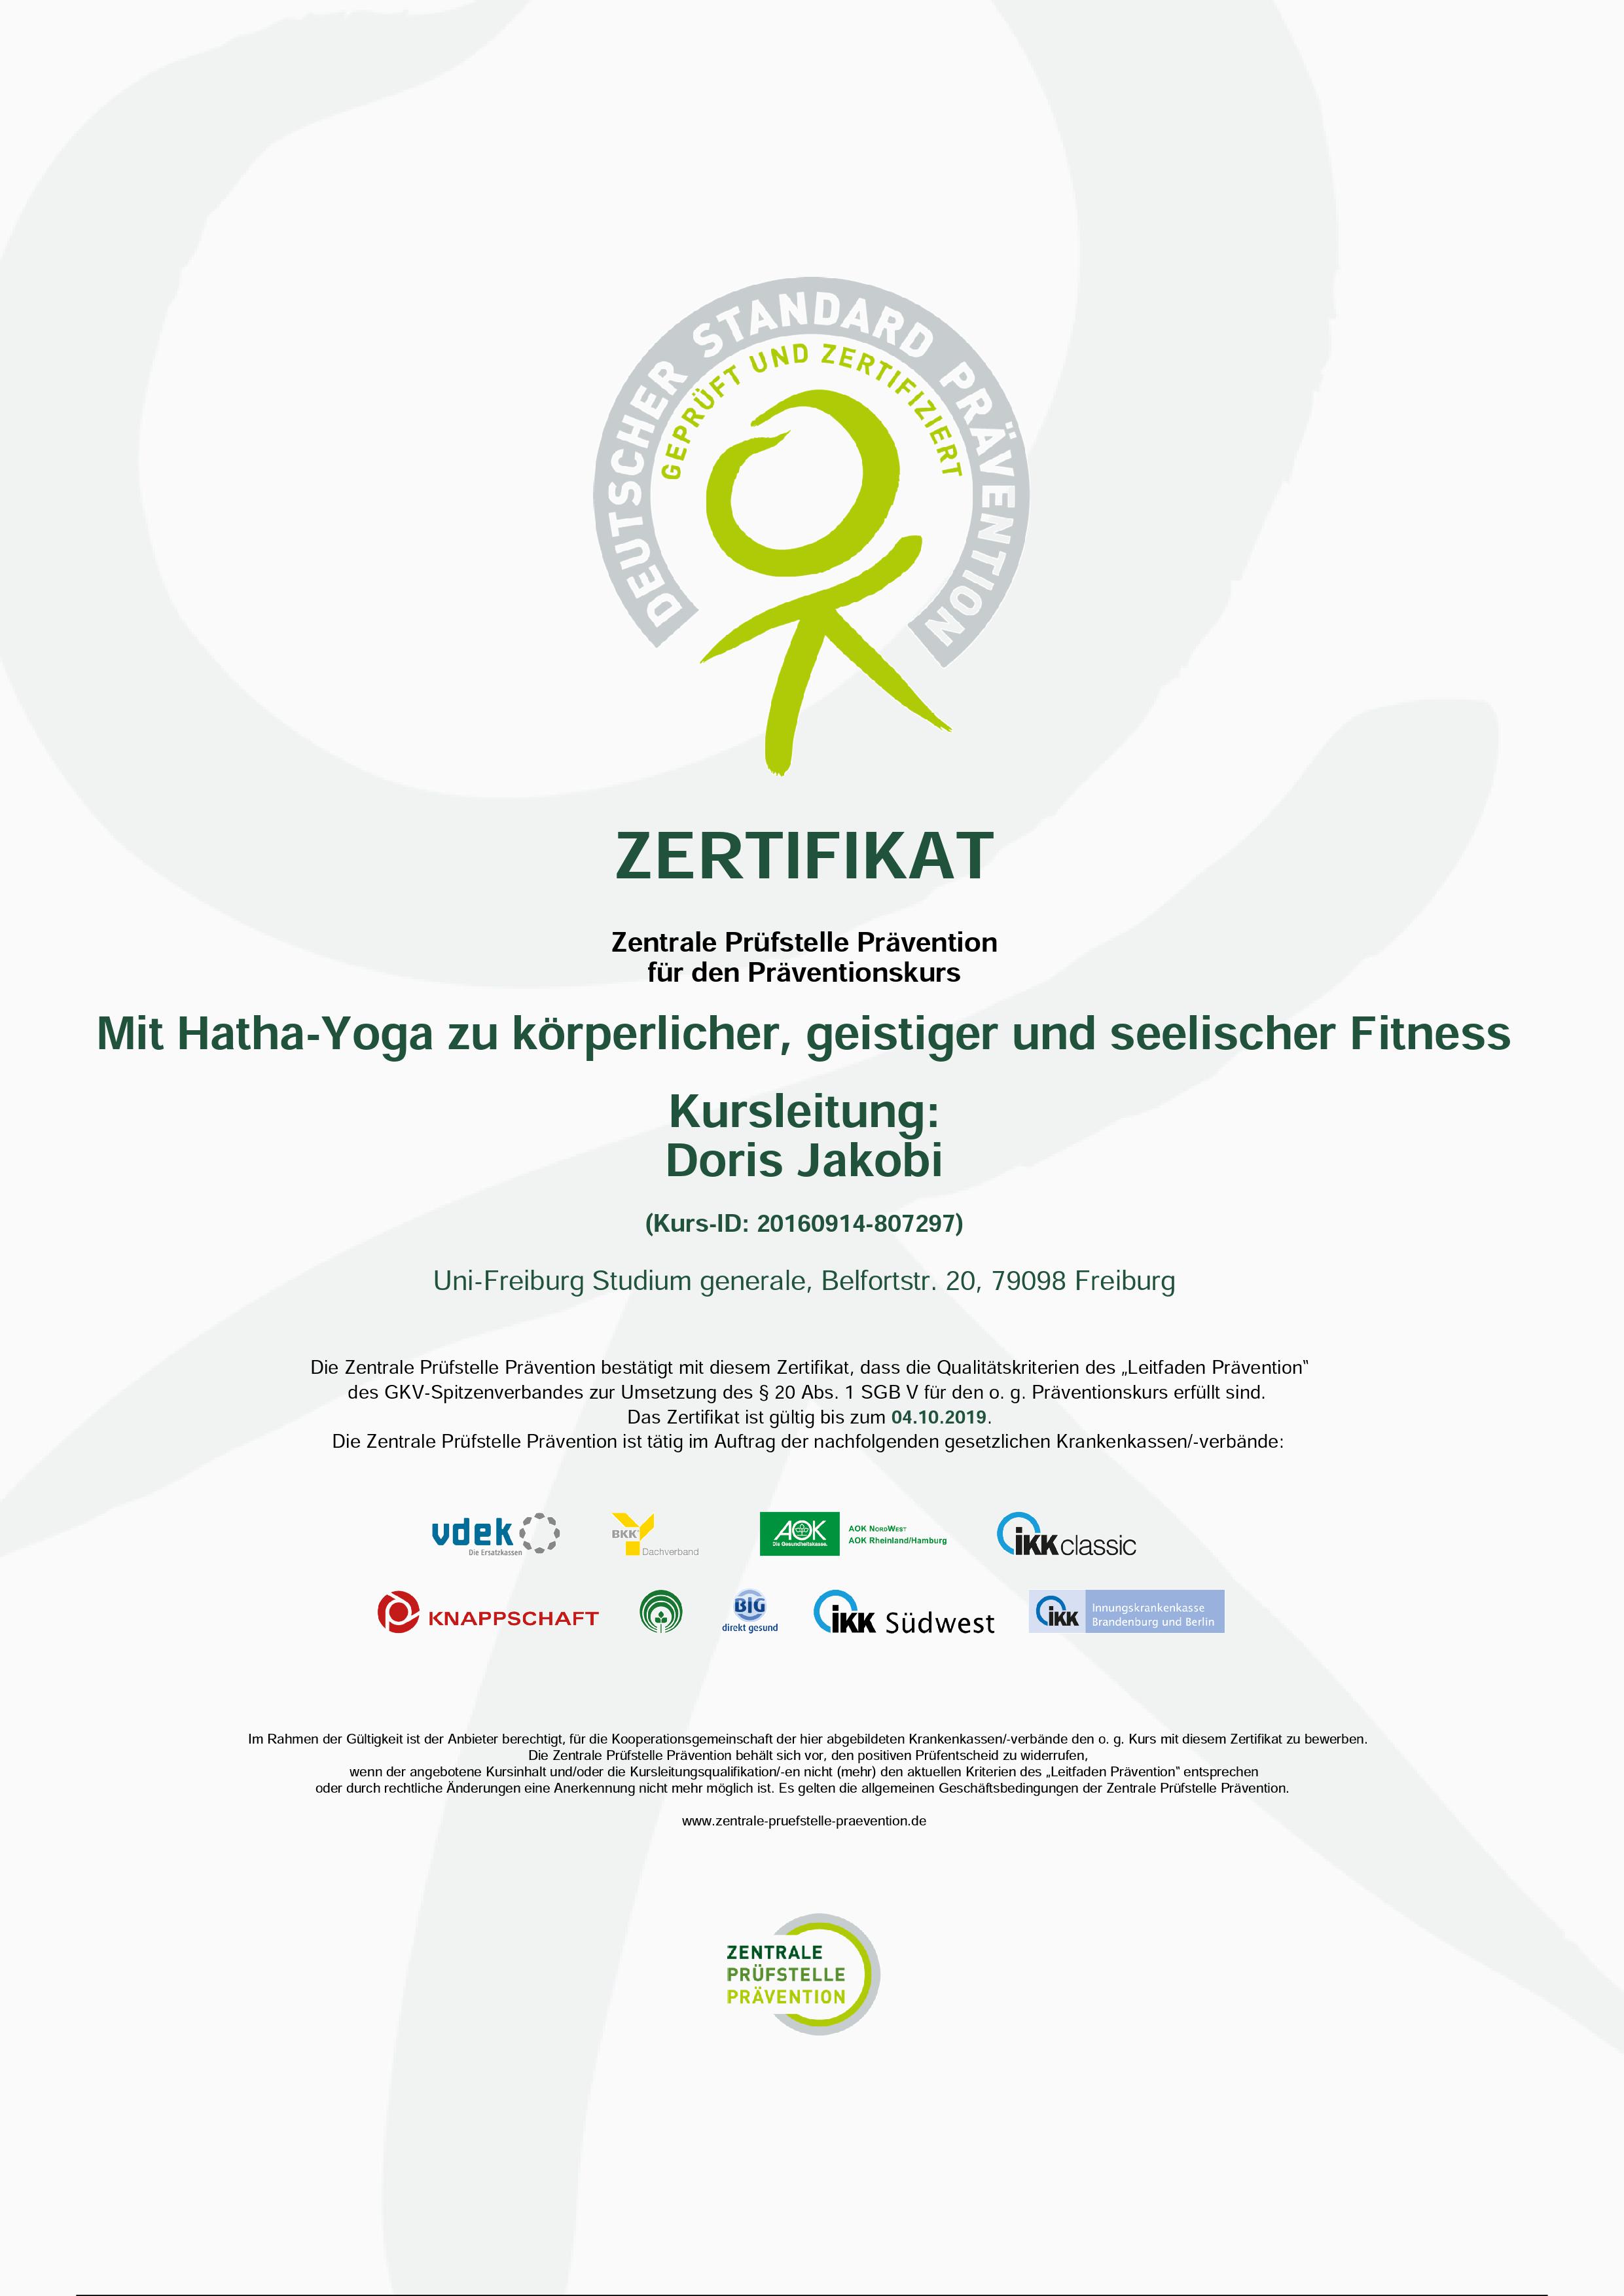 Zertifikat Mit Hatha Yoga zu körperlicher, geistiger und seelischer Fitness